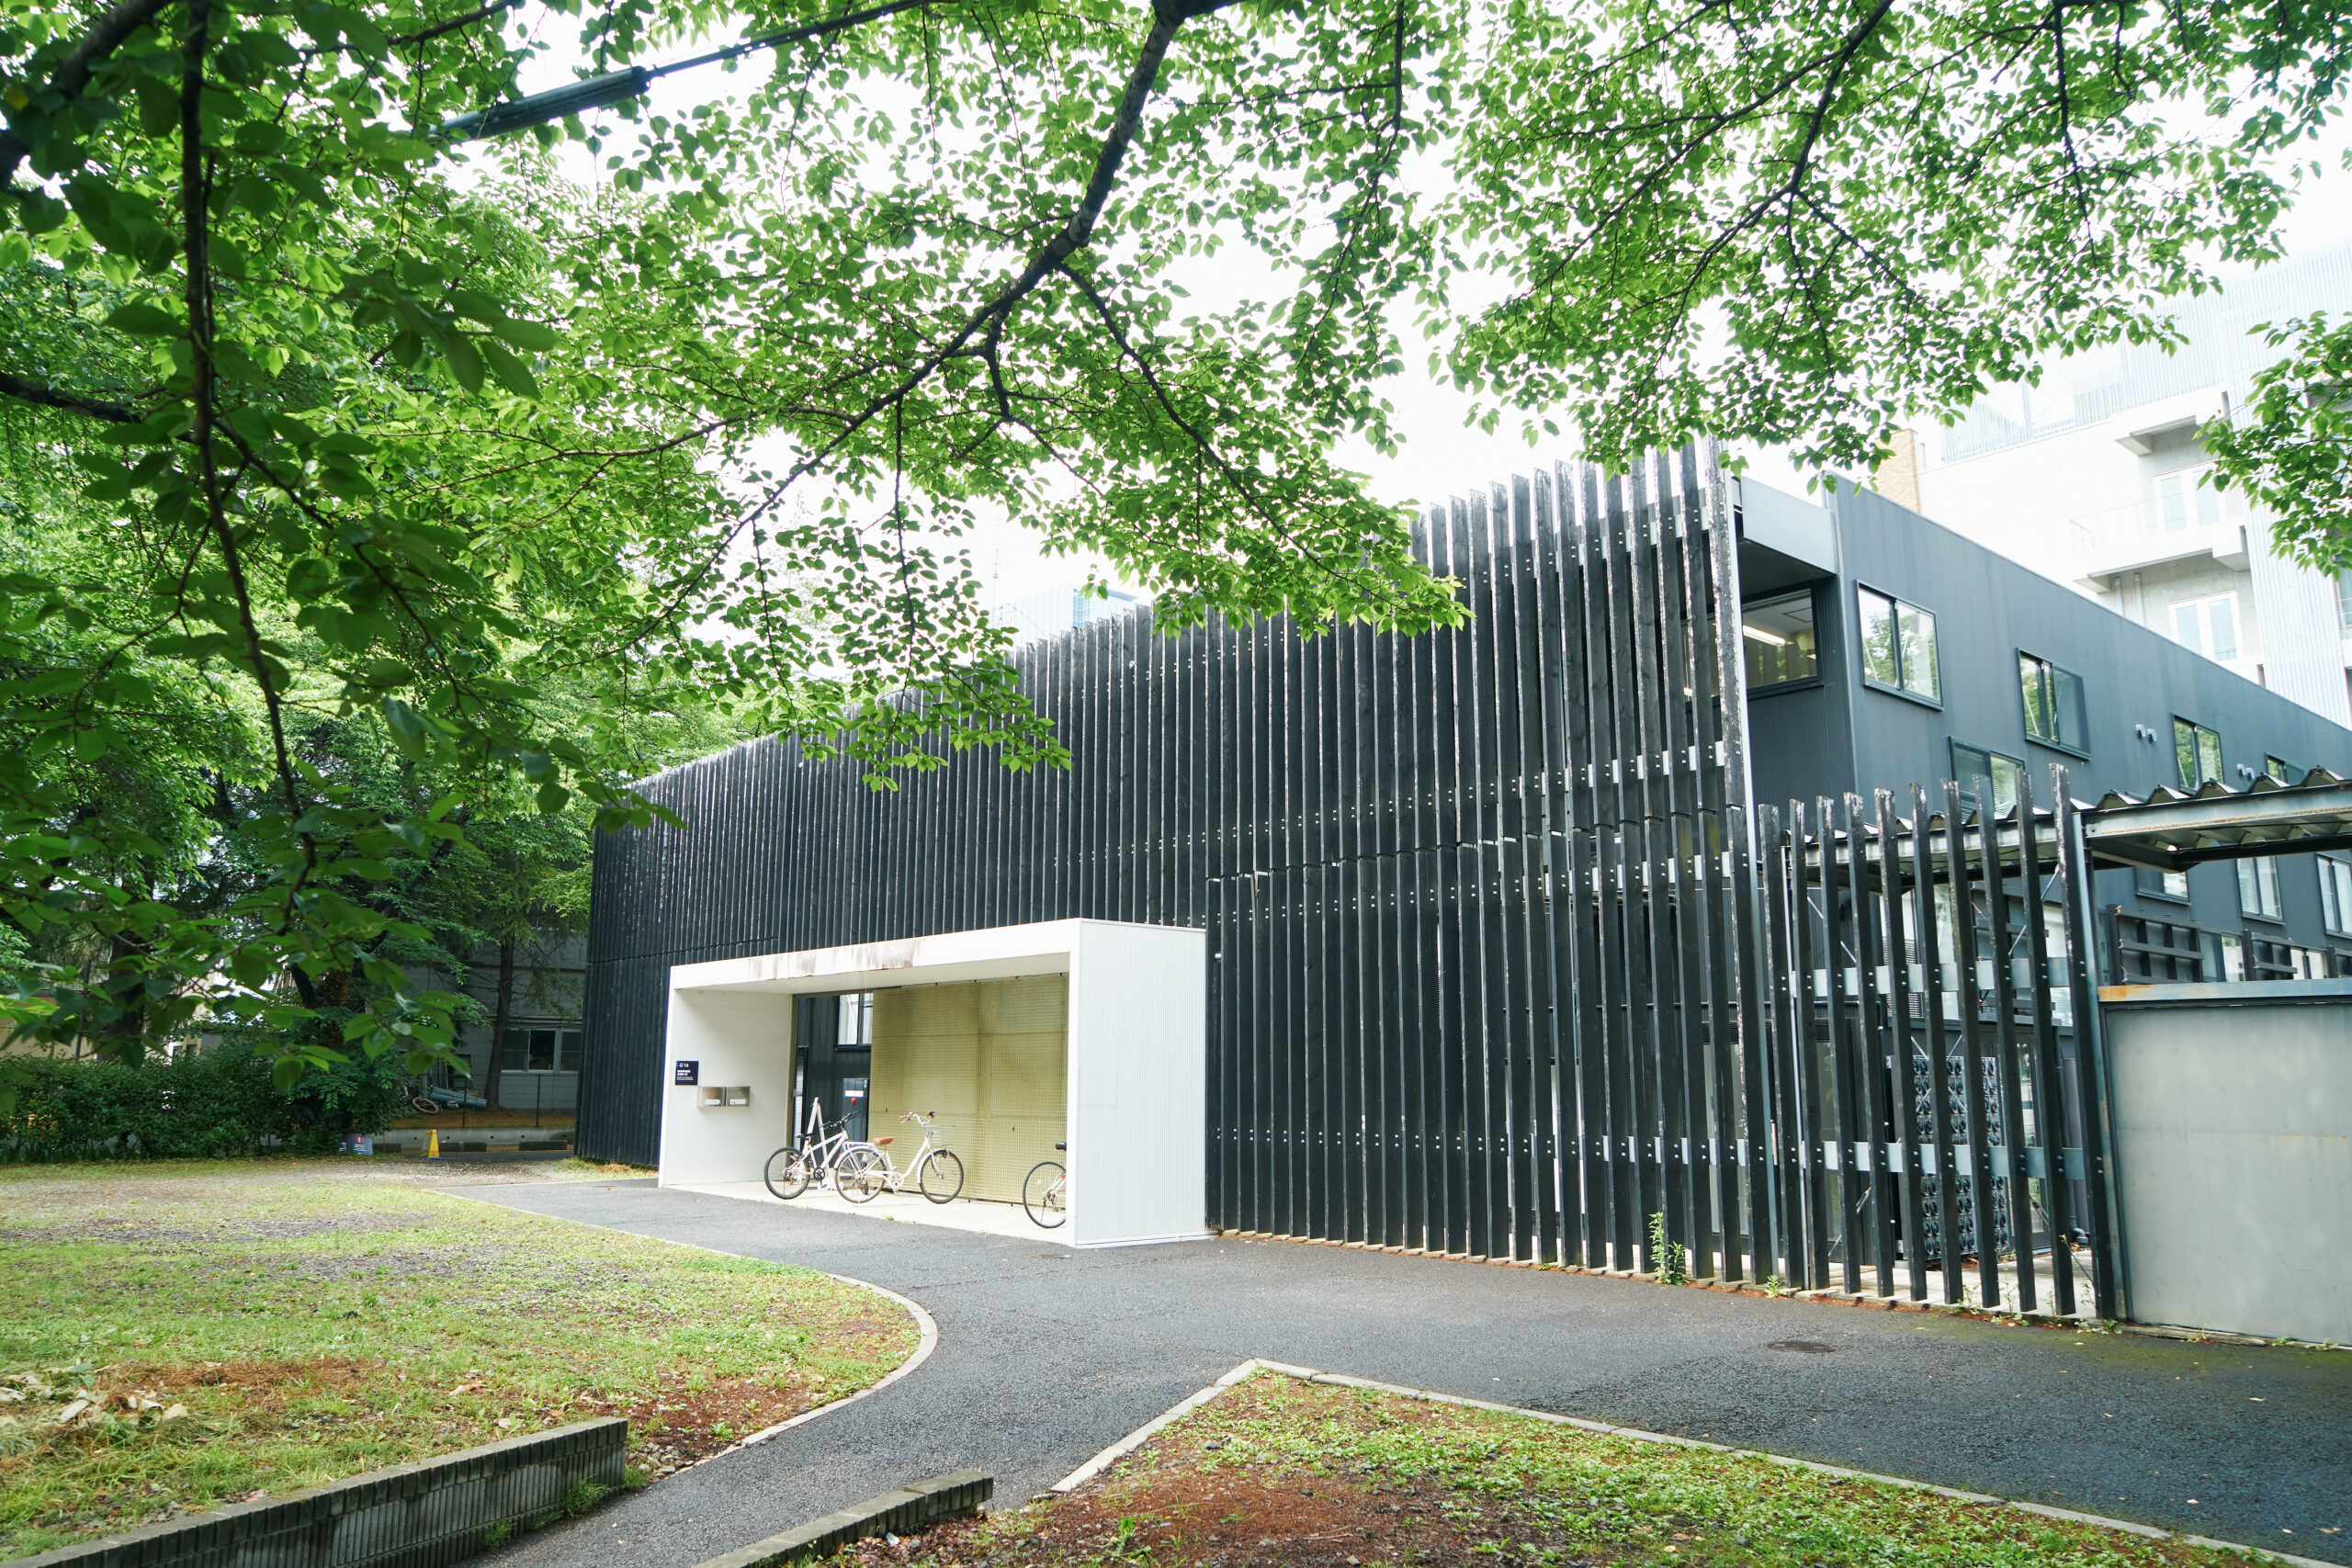 2012年には、五十嵐さんが監修した国際巡回展「3.11―東日本大震災の直後、建築家はどう対応したか」（国際交流基金）のキックオフ展示が『カタヒラ・テン』で開催され、その内容が世界的な注目を集めた。